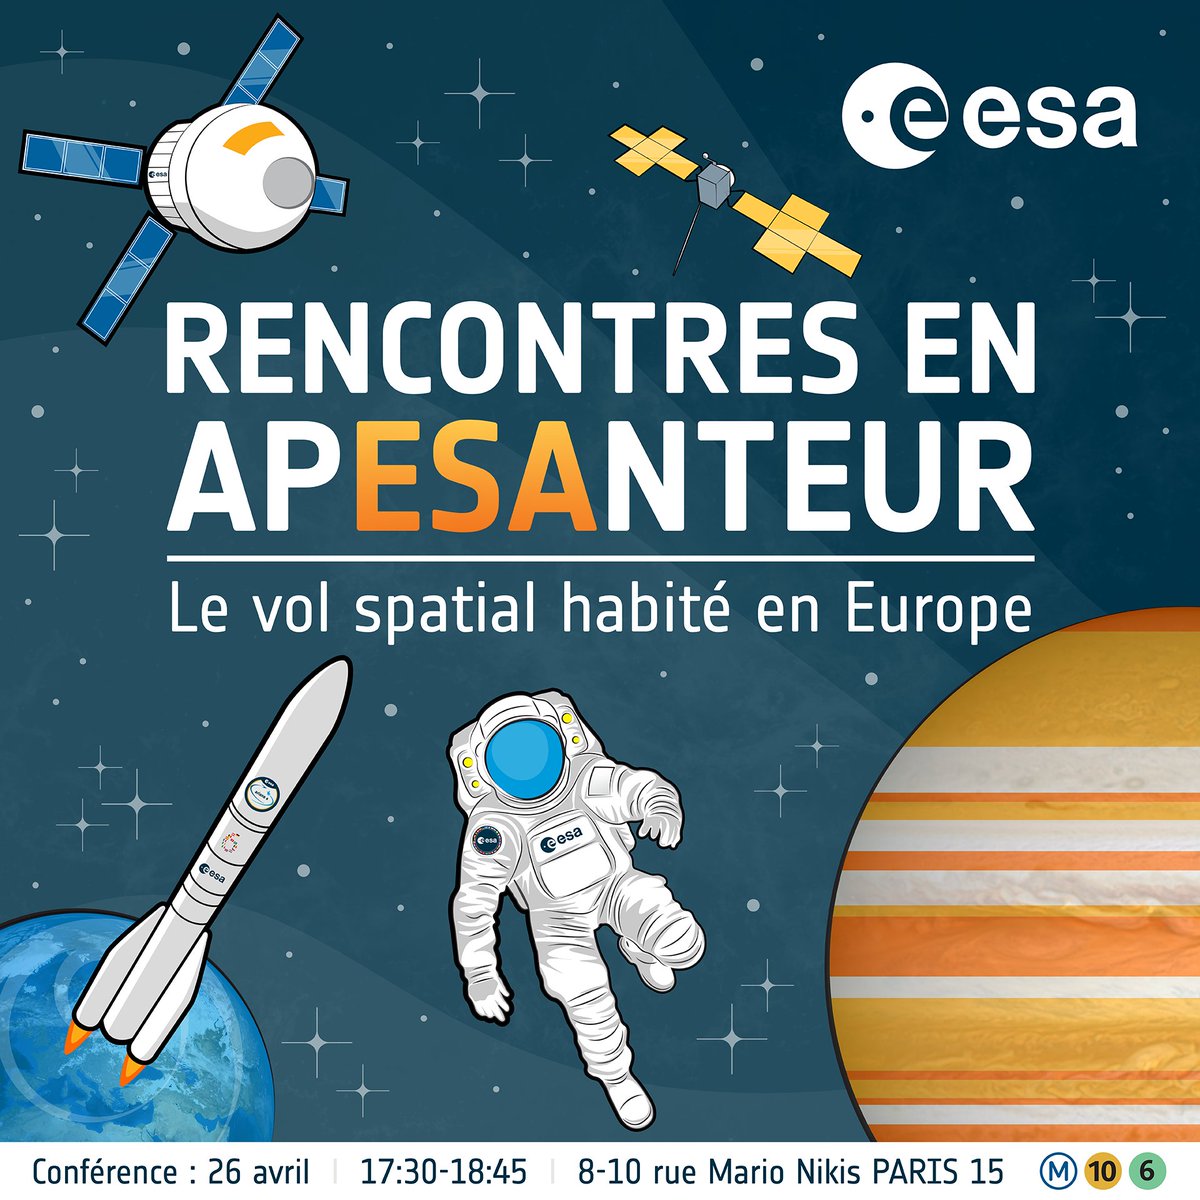 La semaine prochaine à Paris, j'aurai la chance de parler d'exploration spatiale avec @astro_JFrancois @NathalieTinjod et @LoredanaBessone dans la grande salle du siège de l'ESA pour une conférence inédite, vendredi 26! N'hésitez pas à vous inscrire 🙂 ➡️esa.int/Space_in_Membe…